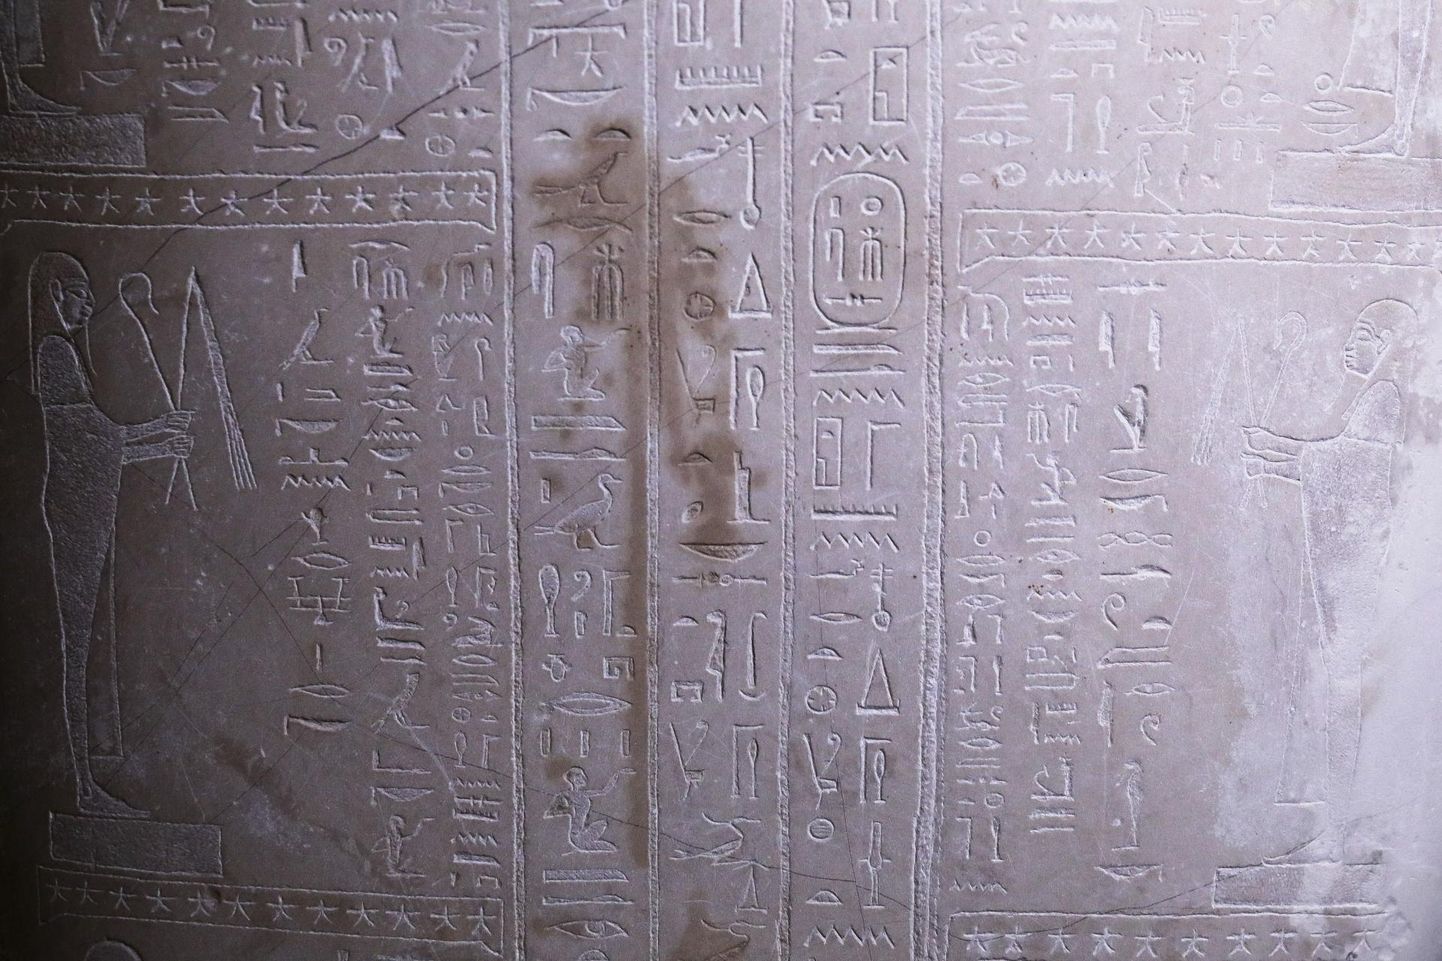 Õliplekk Neue Museumis eksponeeritud sarkofaagil, mis langes vandaalide rünnaku ohvriks. 